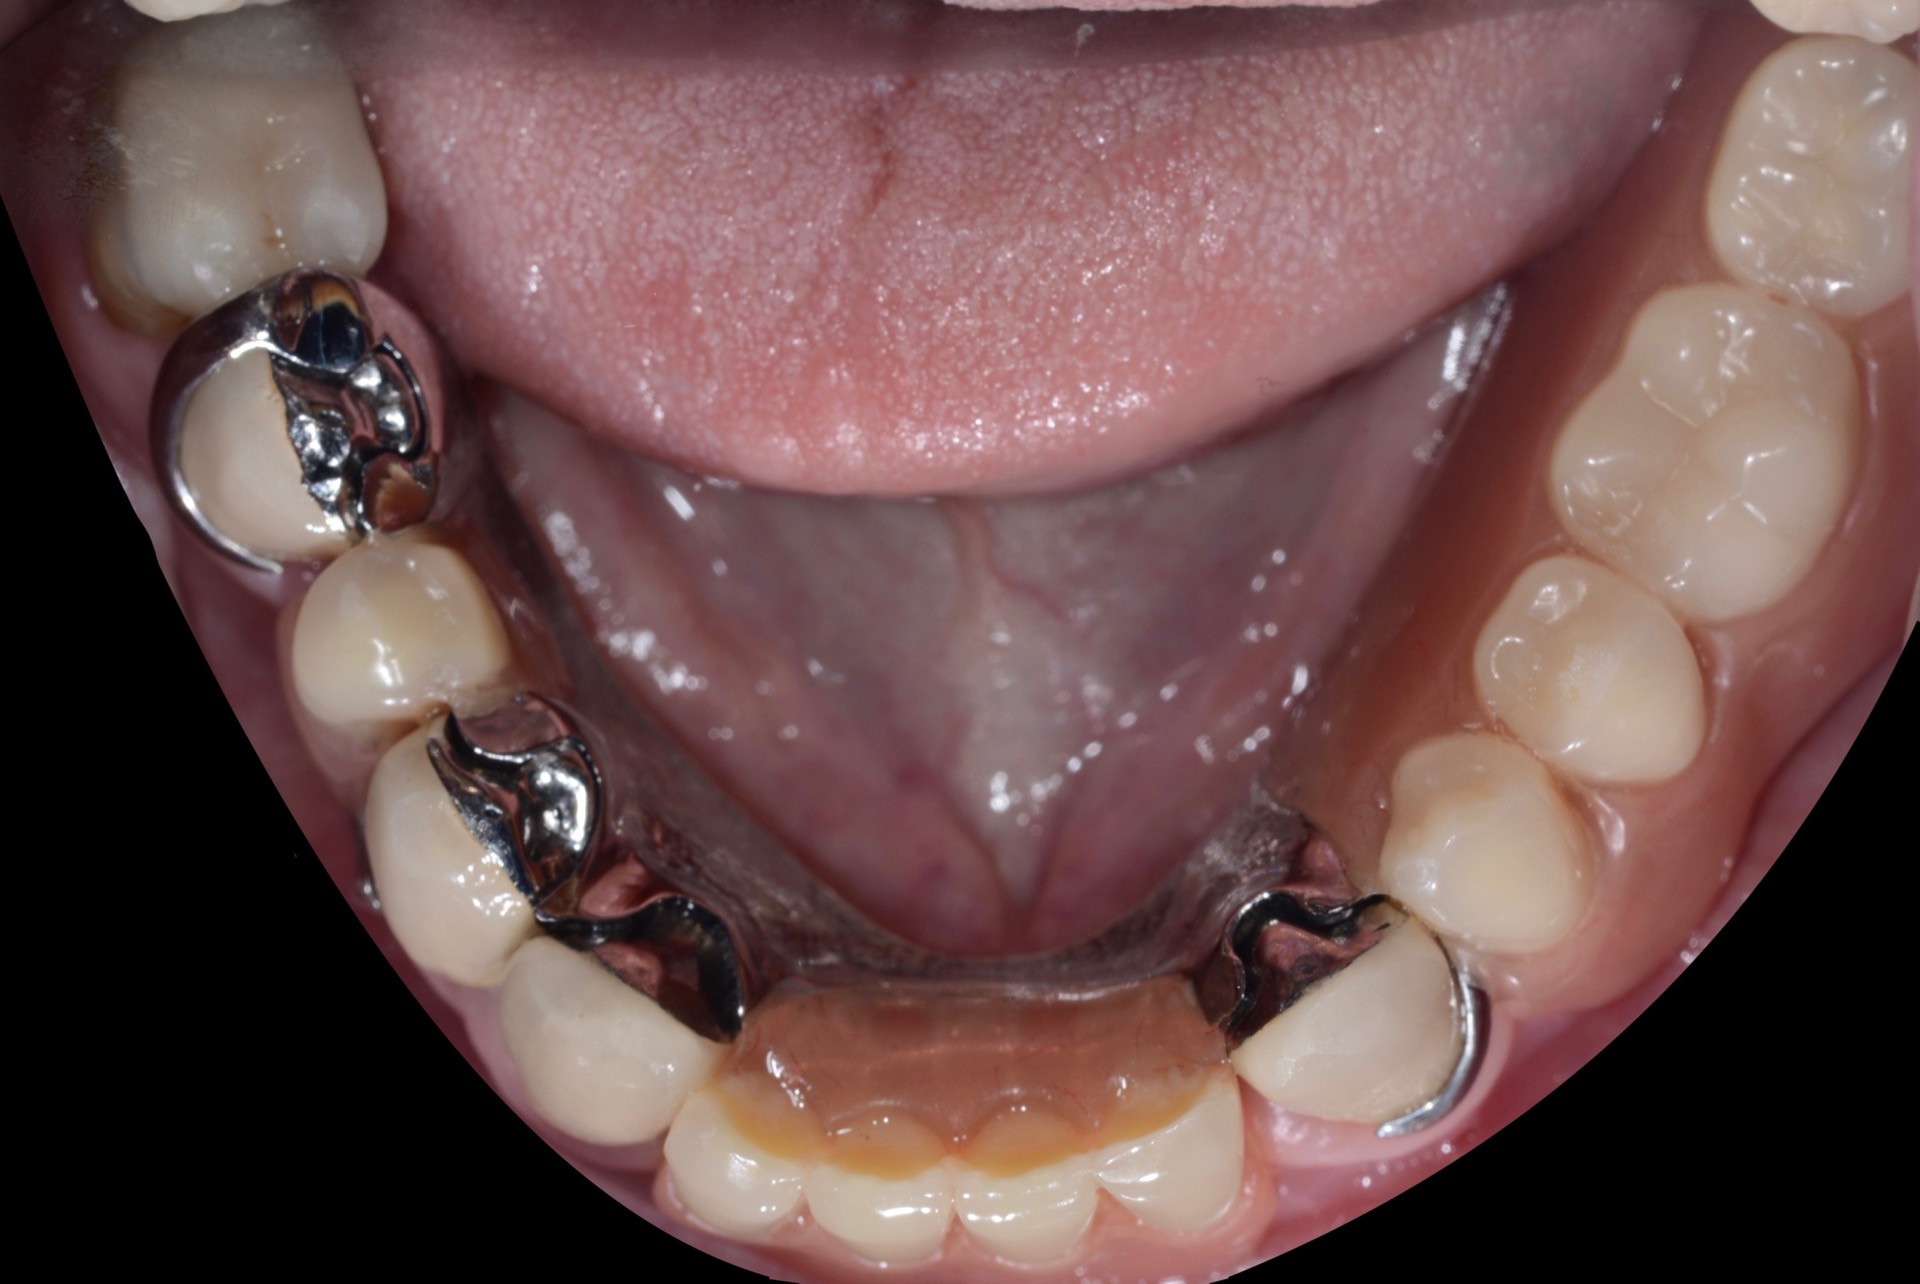 Τελική κατάσταση - Μασητική άποψη κάτω γνάθου (με την μερική οδοντοστοιχία τοποθετημένη.